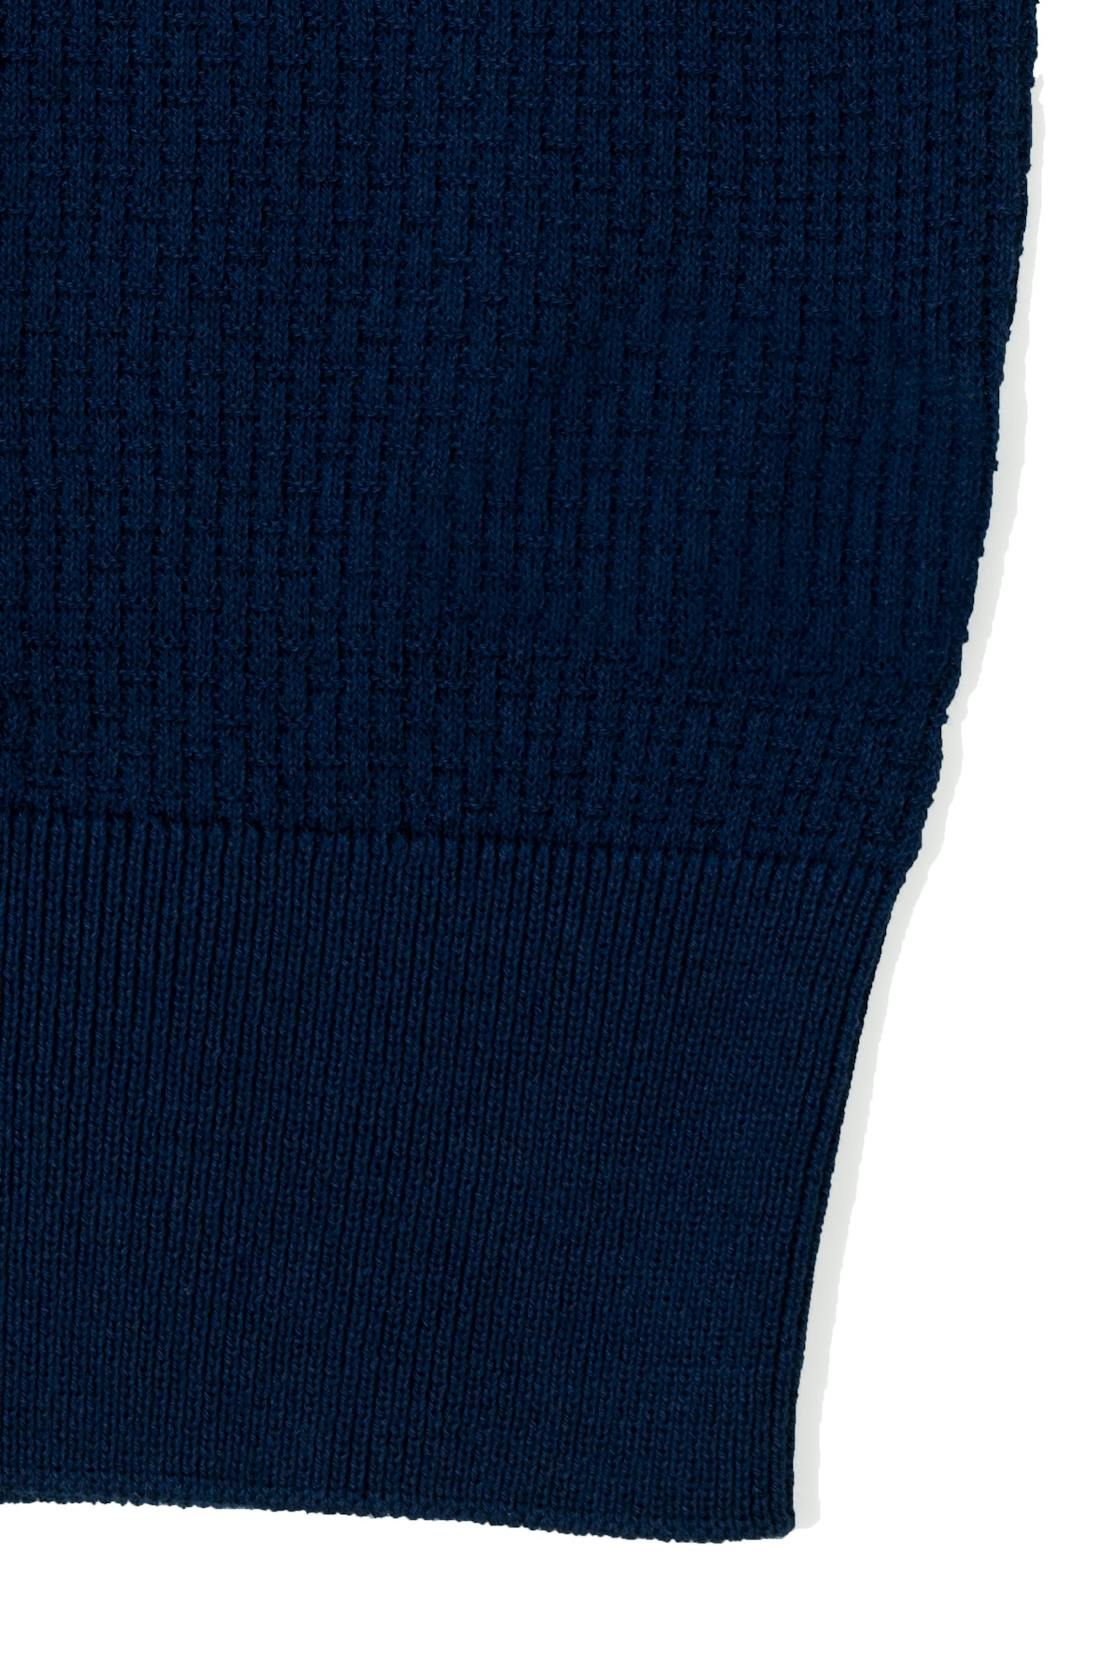 Liverano Blue Cotton Short Sleeve Spread Collar Polo